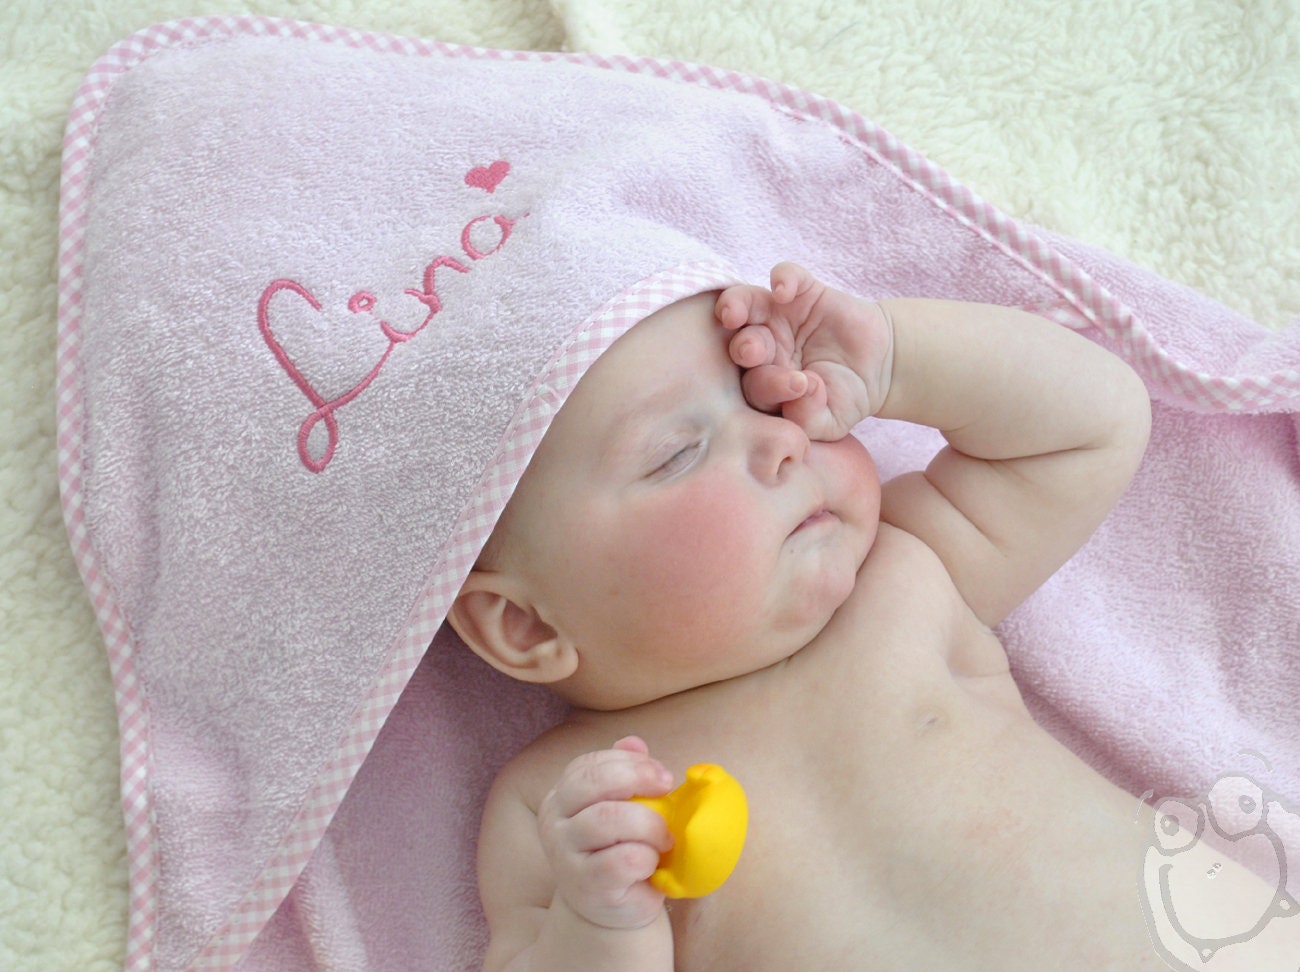 Baby Handtuch Badetuch Kapuzentuch Duschtuch rosa NP 16 € neu mit Etikett 